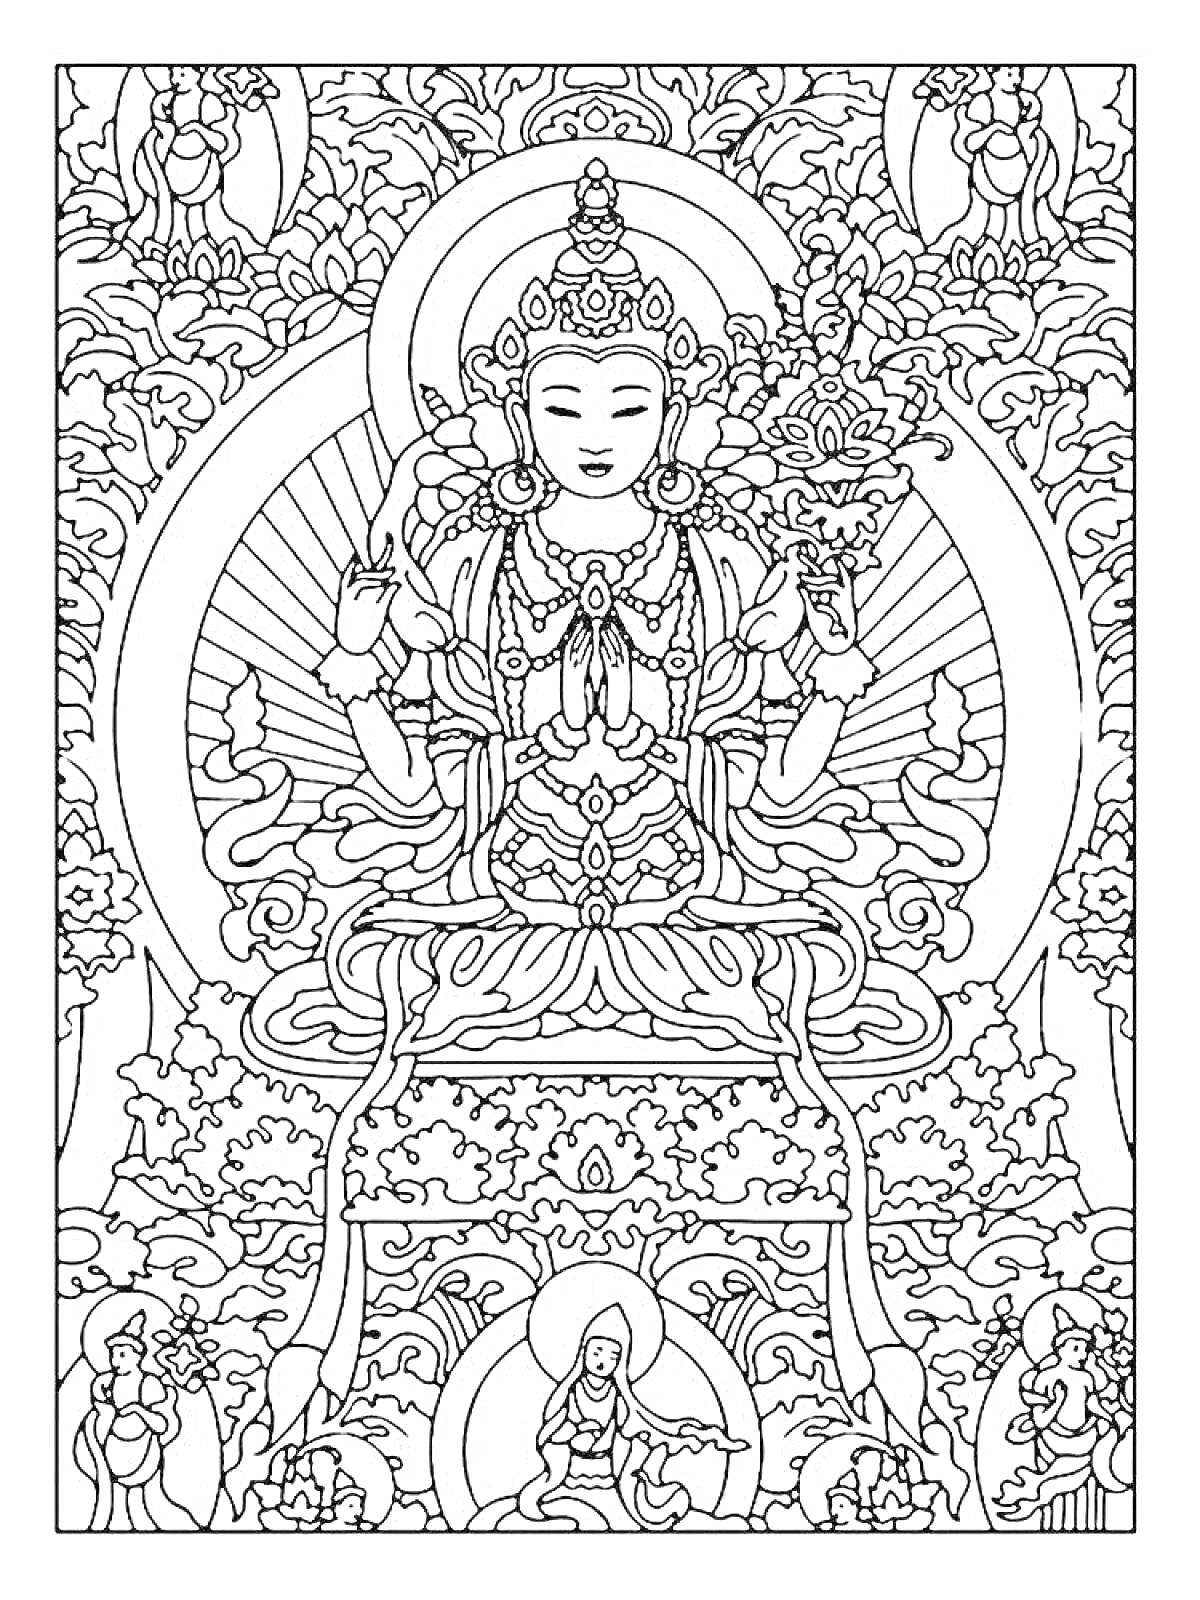 Раскраска Будда в медитации с цветами и священными орнаментами, окружённый богами в облаках